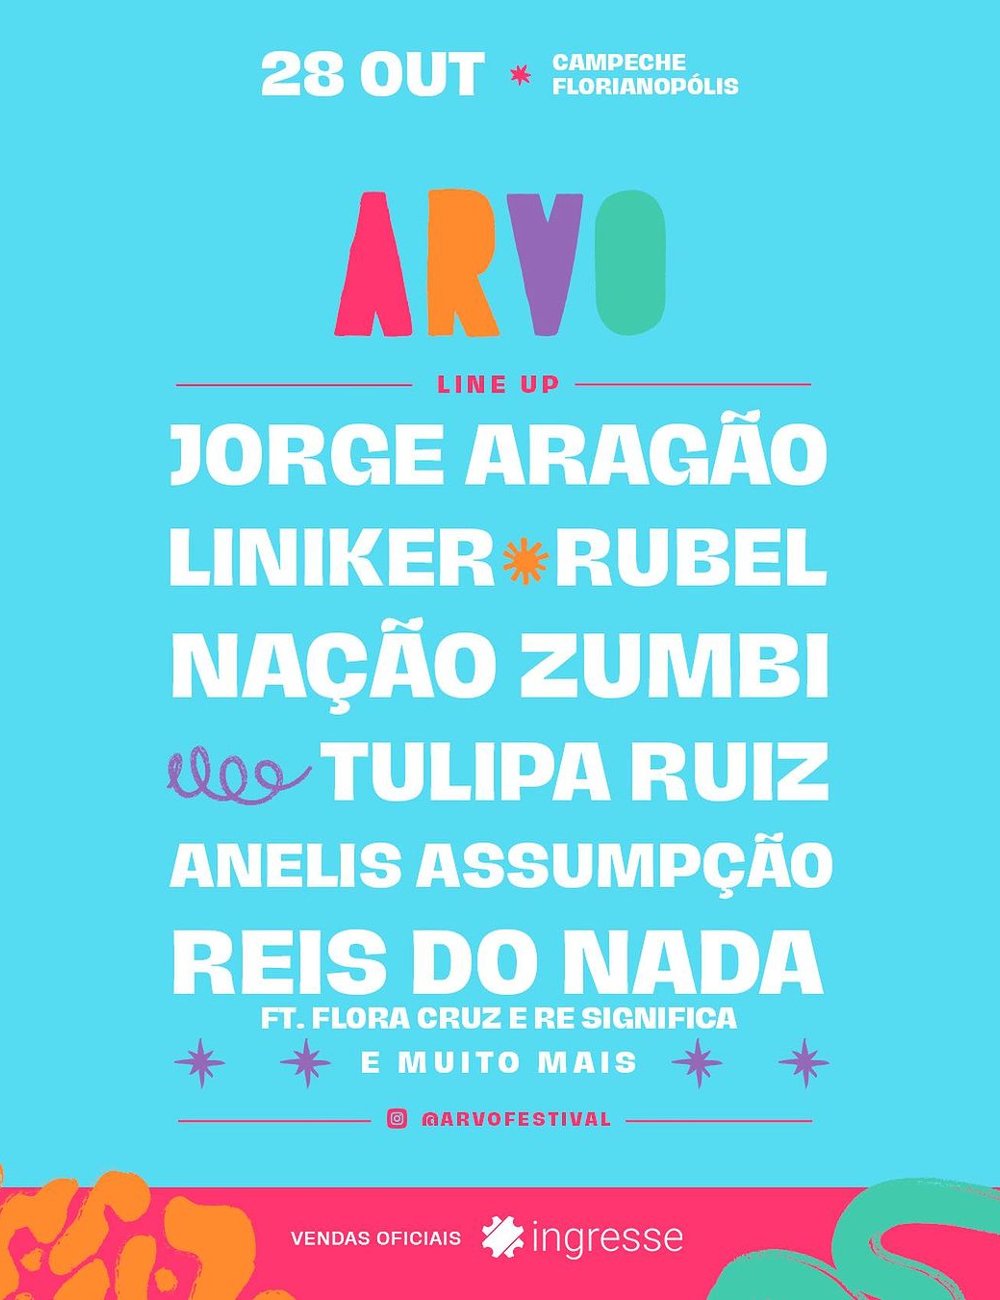 Arvo Festival - festivais de música - festivais de música - festivais de música - festivais de música - https://stealthelook.com.br